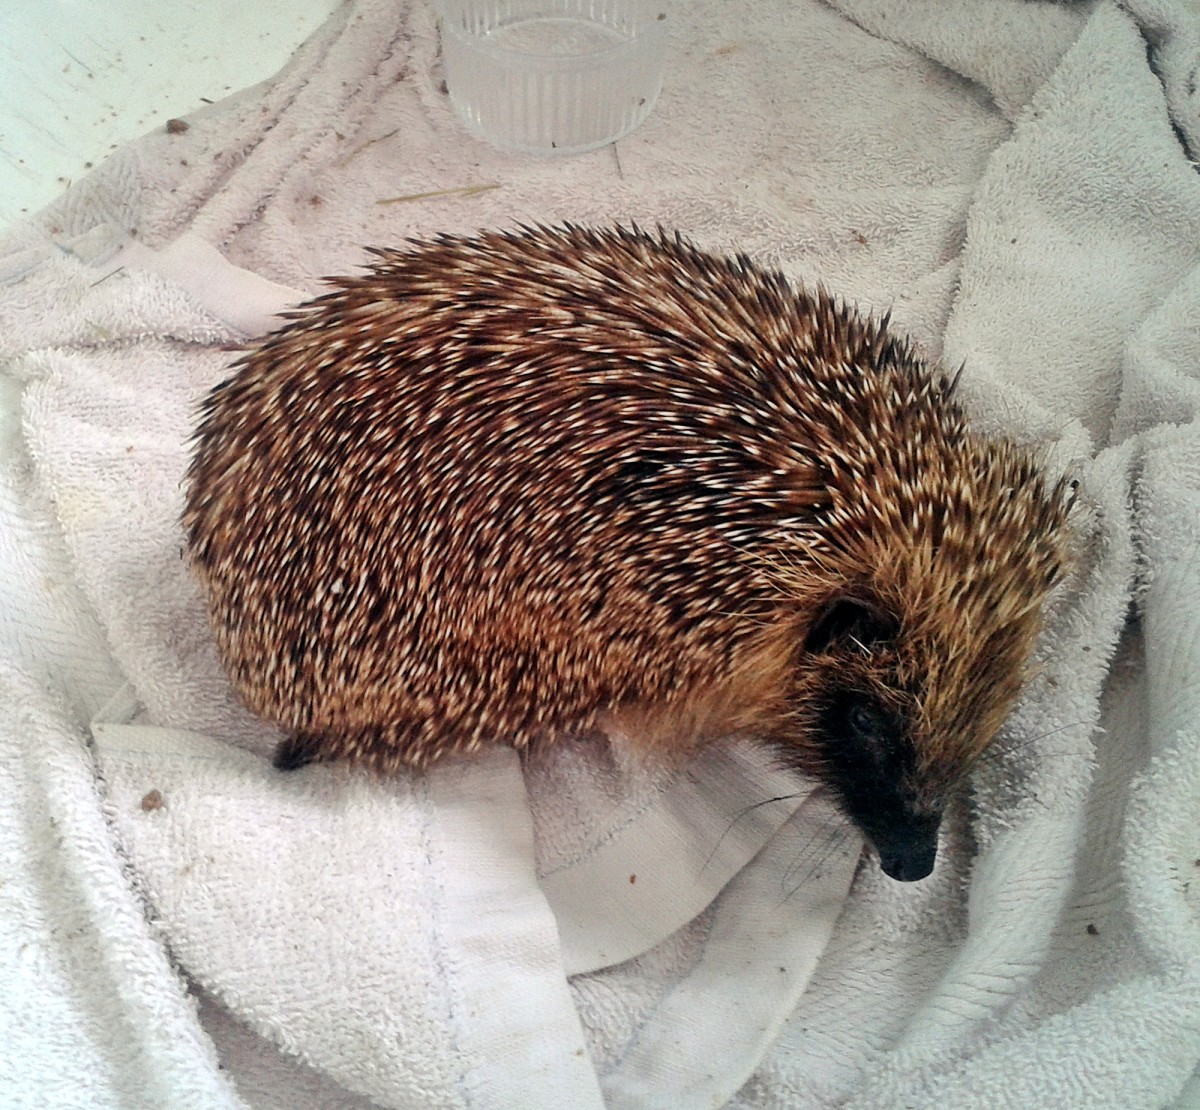 How We Saved Spike the Baby Hedgehog